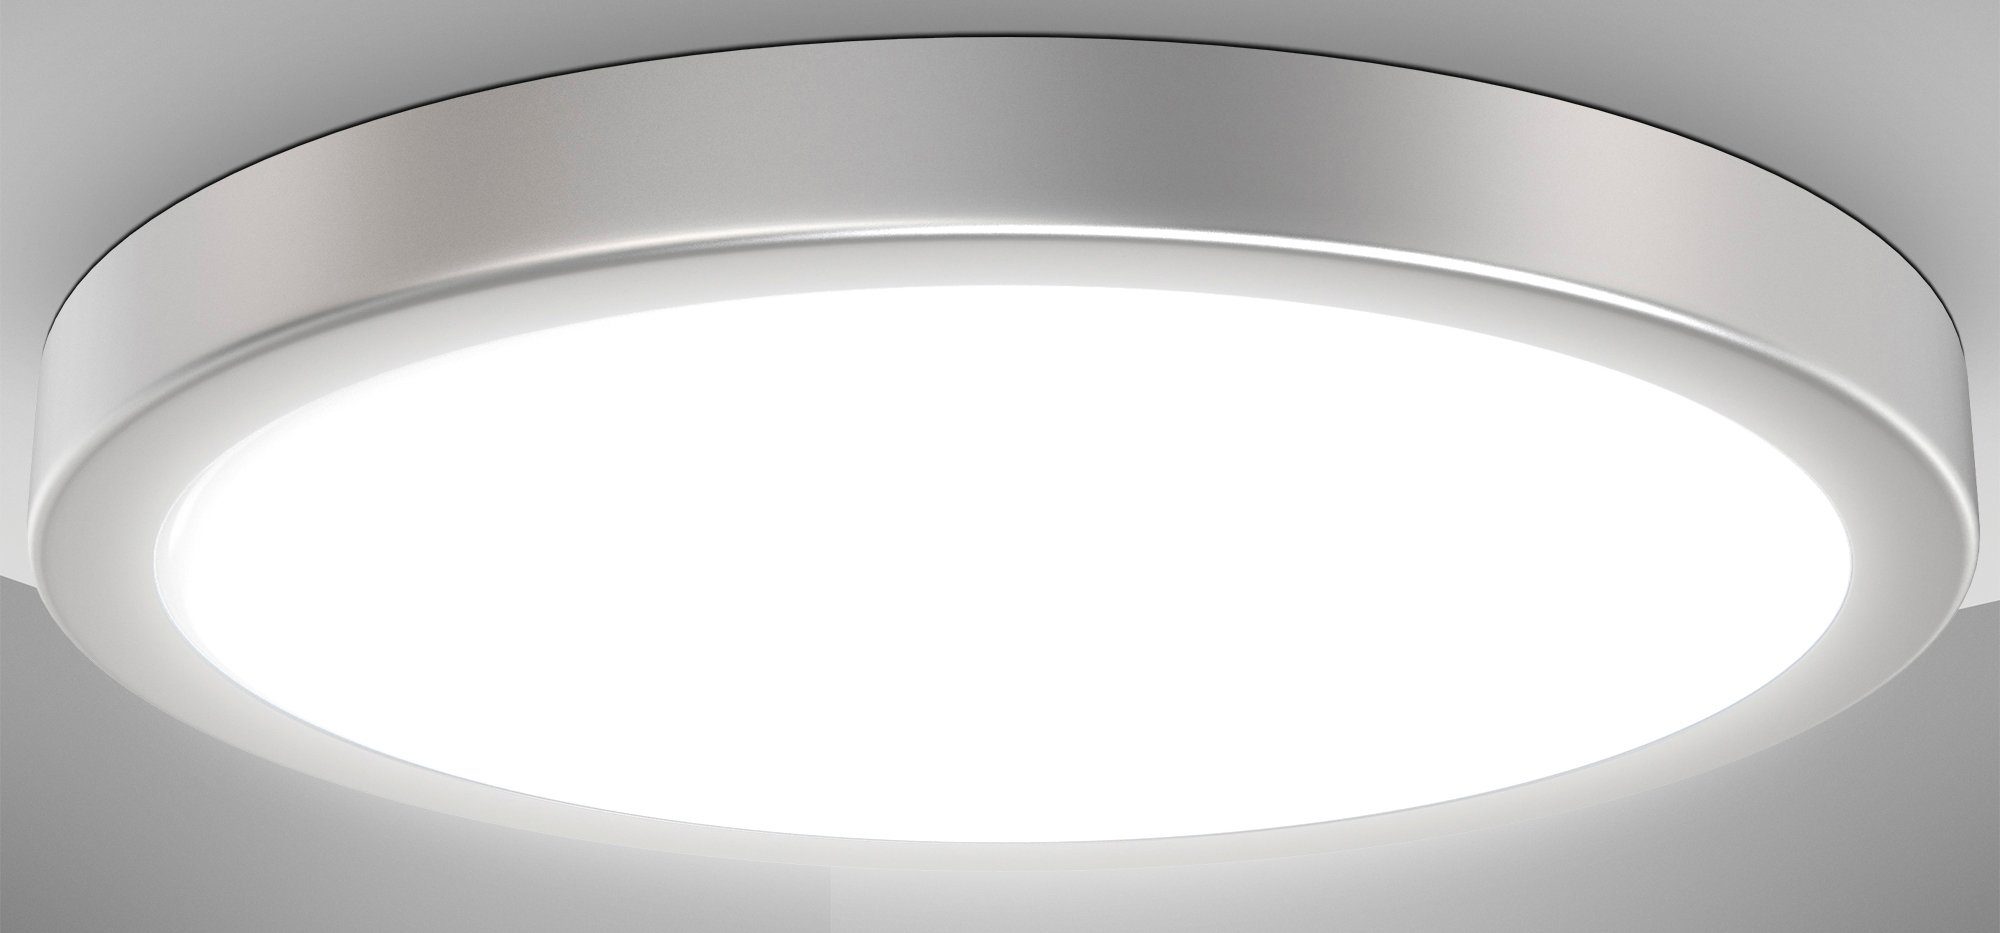 BK_DL1537 Deckenleuchte Neutralweiß, integriert, LED B.K.Licht Deckenlampe, fest Ø38cm, 24W, LED Licht, 4.000K, Neutralweißes 3.000Lm, LED Küchenlampe Silberfarbig,